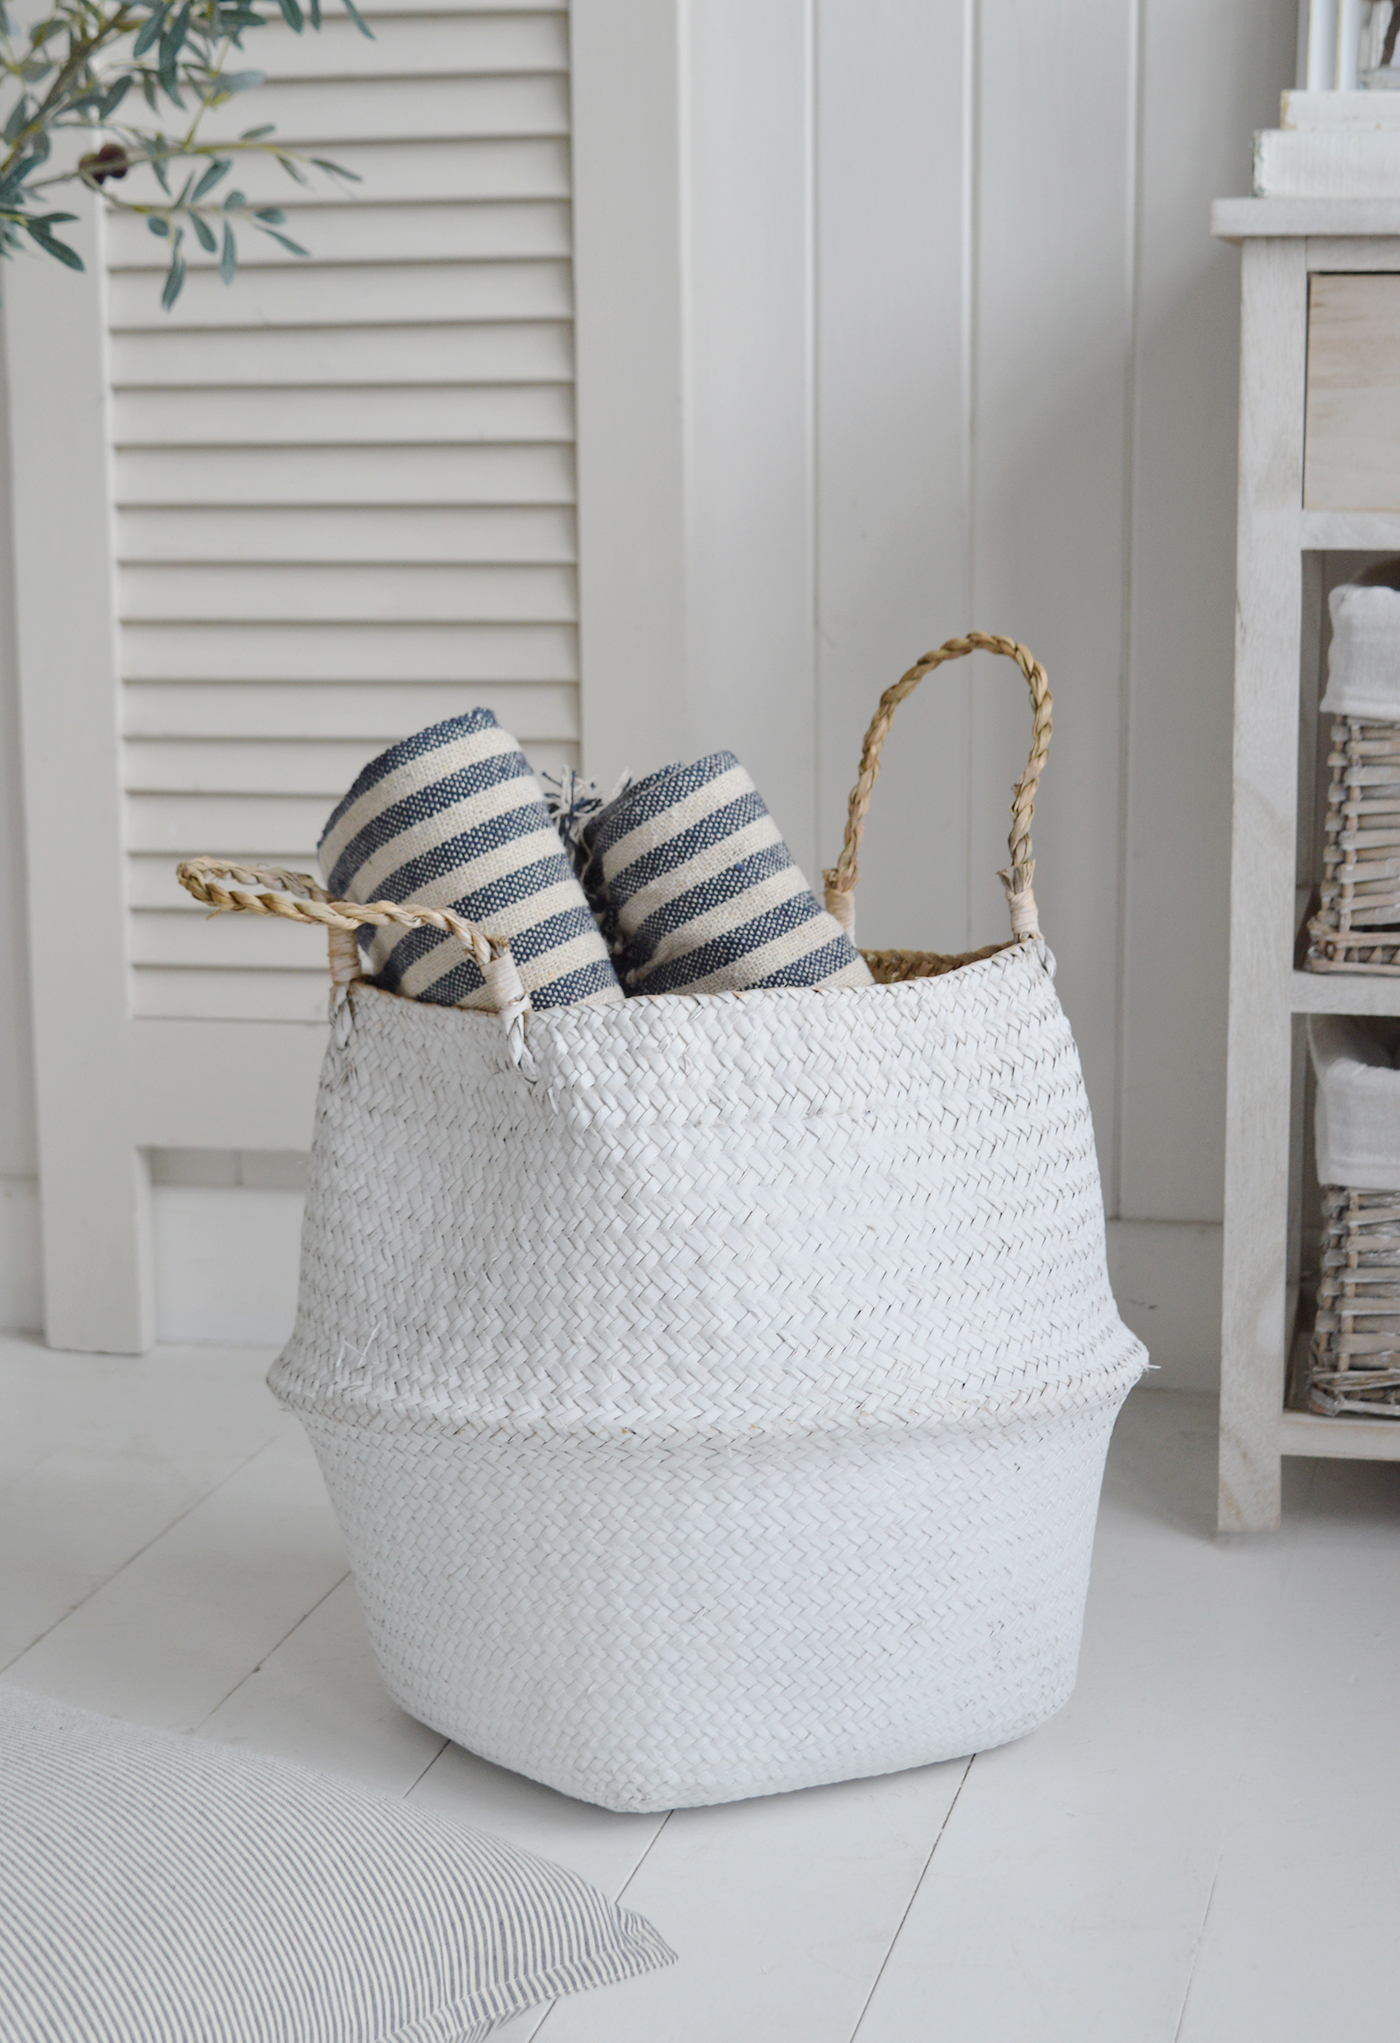 The coastal Kingston white basket filled with the Mapleton white and navy stripe throws